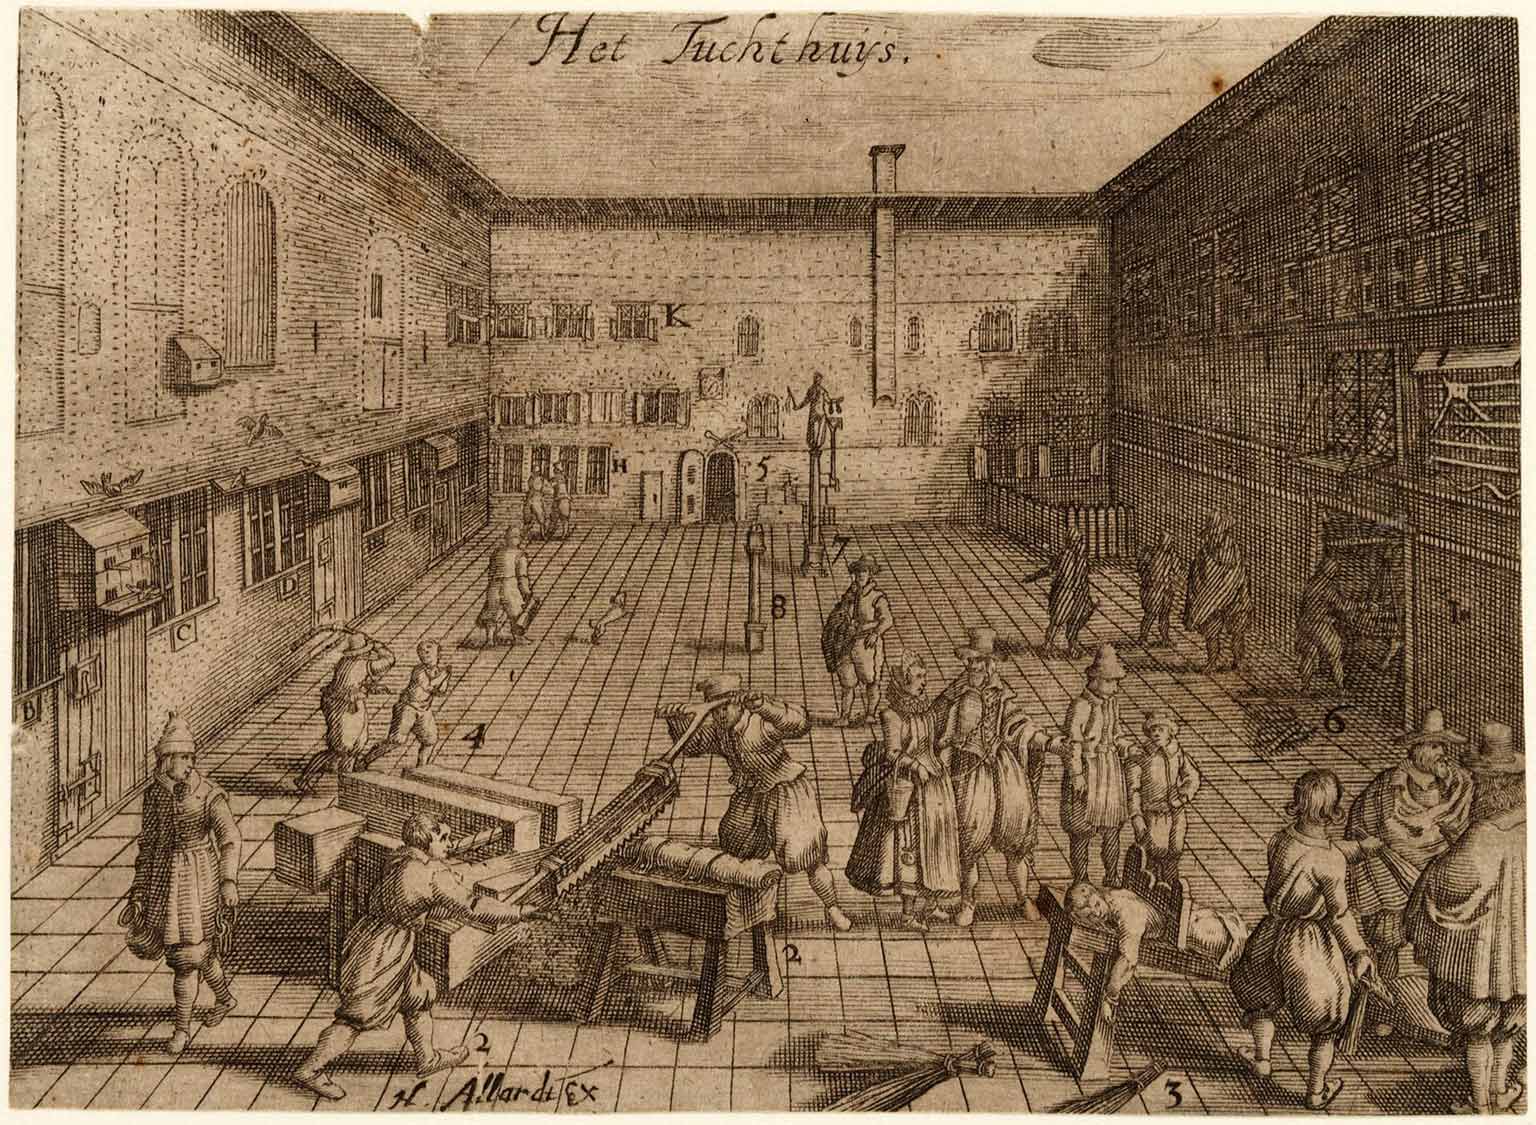 Binnenplaats van het Rasphuis op de Heiligeweg, Amsterdam, gravure uit 1612